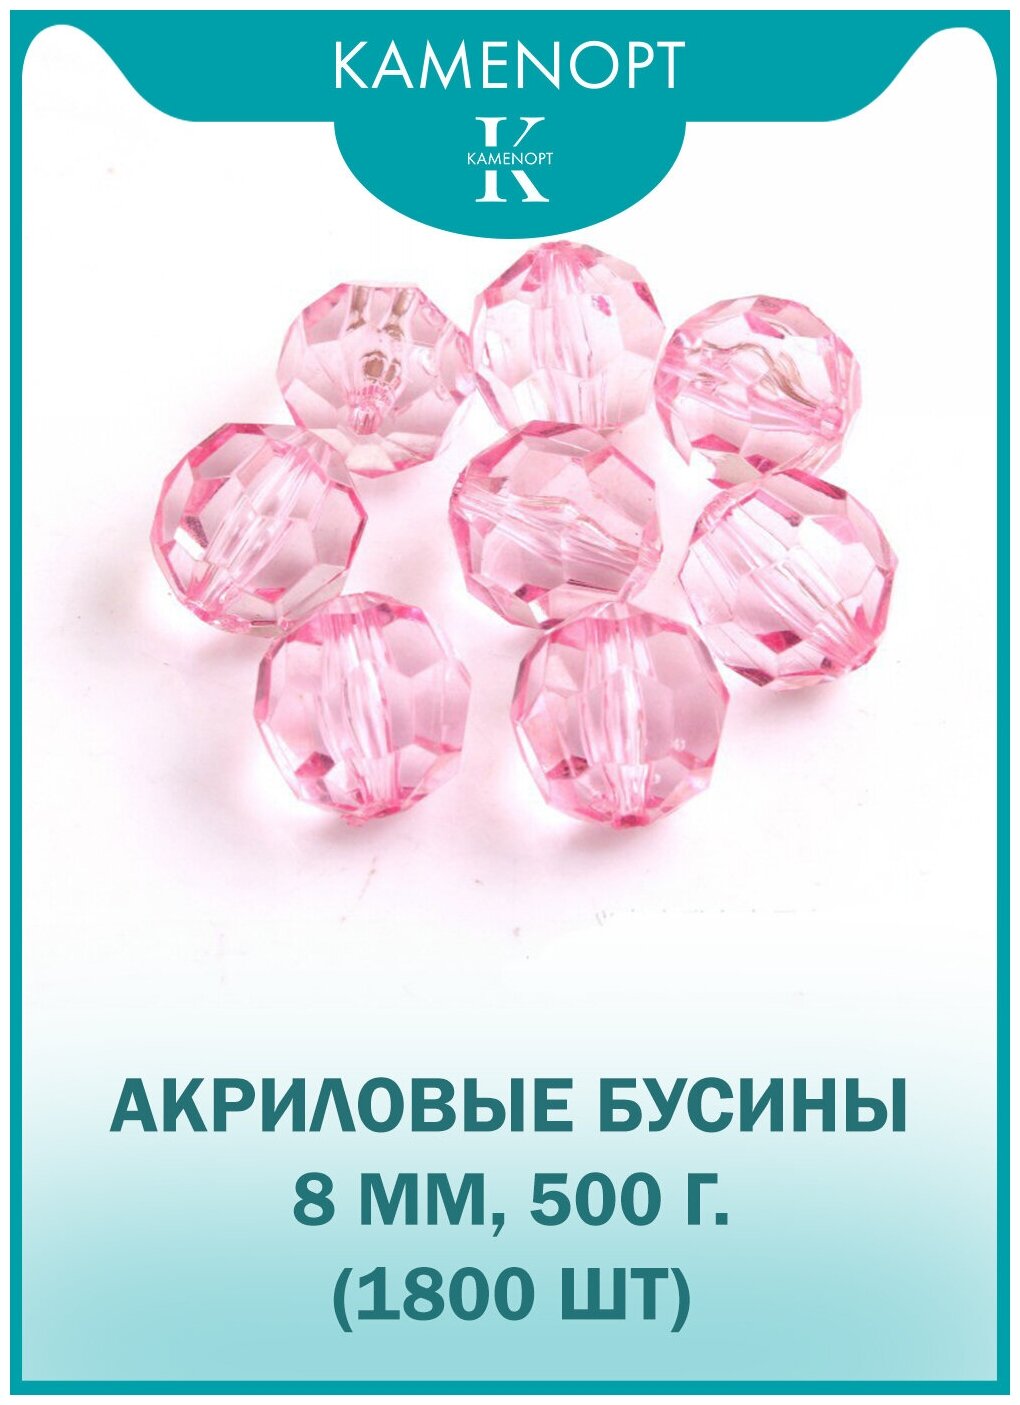 Бусины Акрил граненые 8 мм, цвет: Светло-розовые, уп/500 гр (1800 шт)